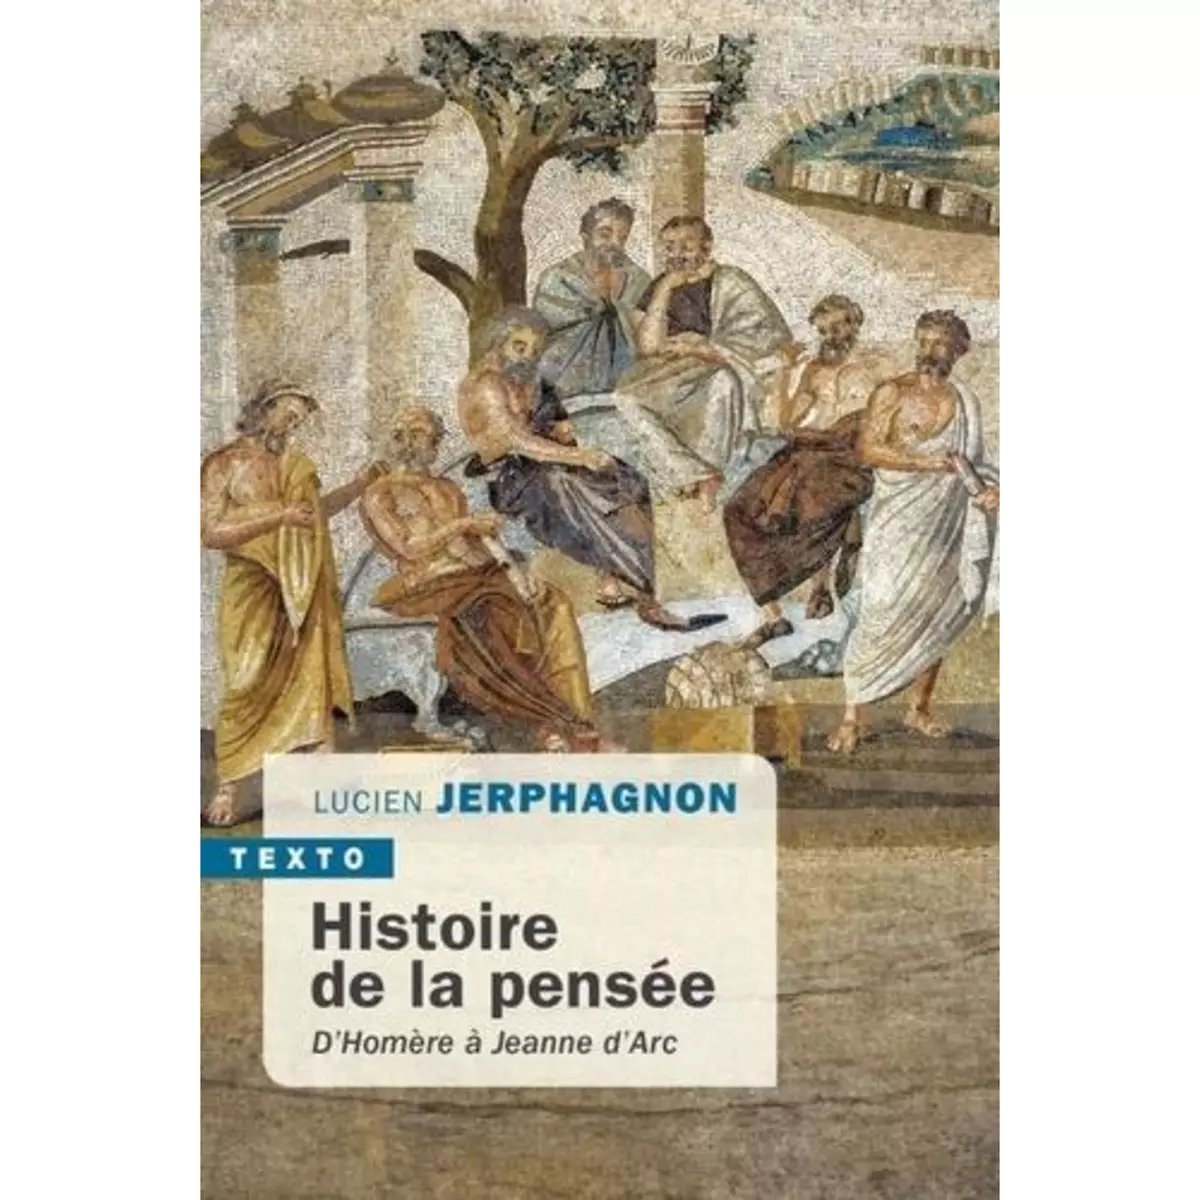  HISTOIRE DE LA PENSEE. D'HOMERE A JEANNE D'ARC, Jerphagnon Lucien